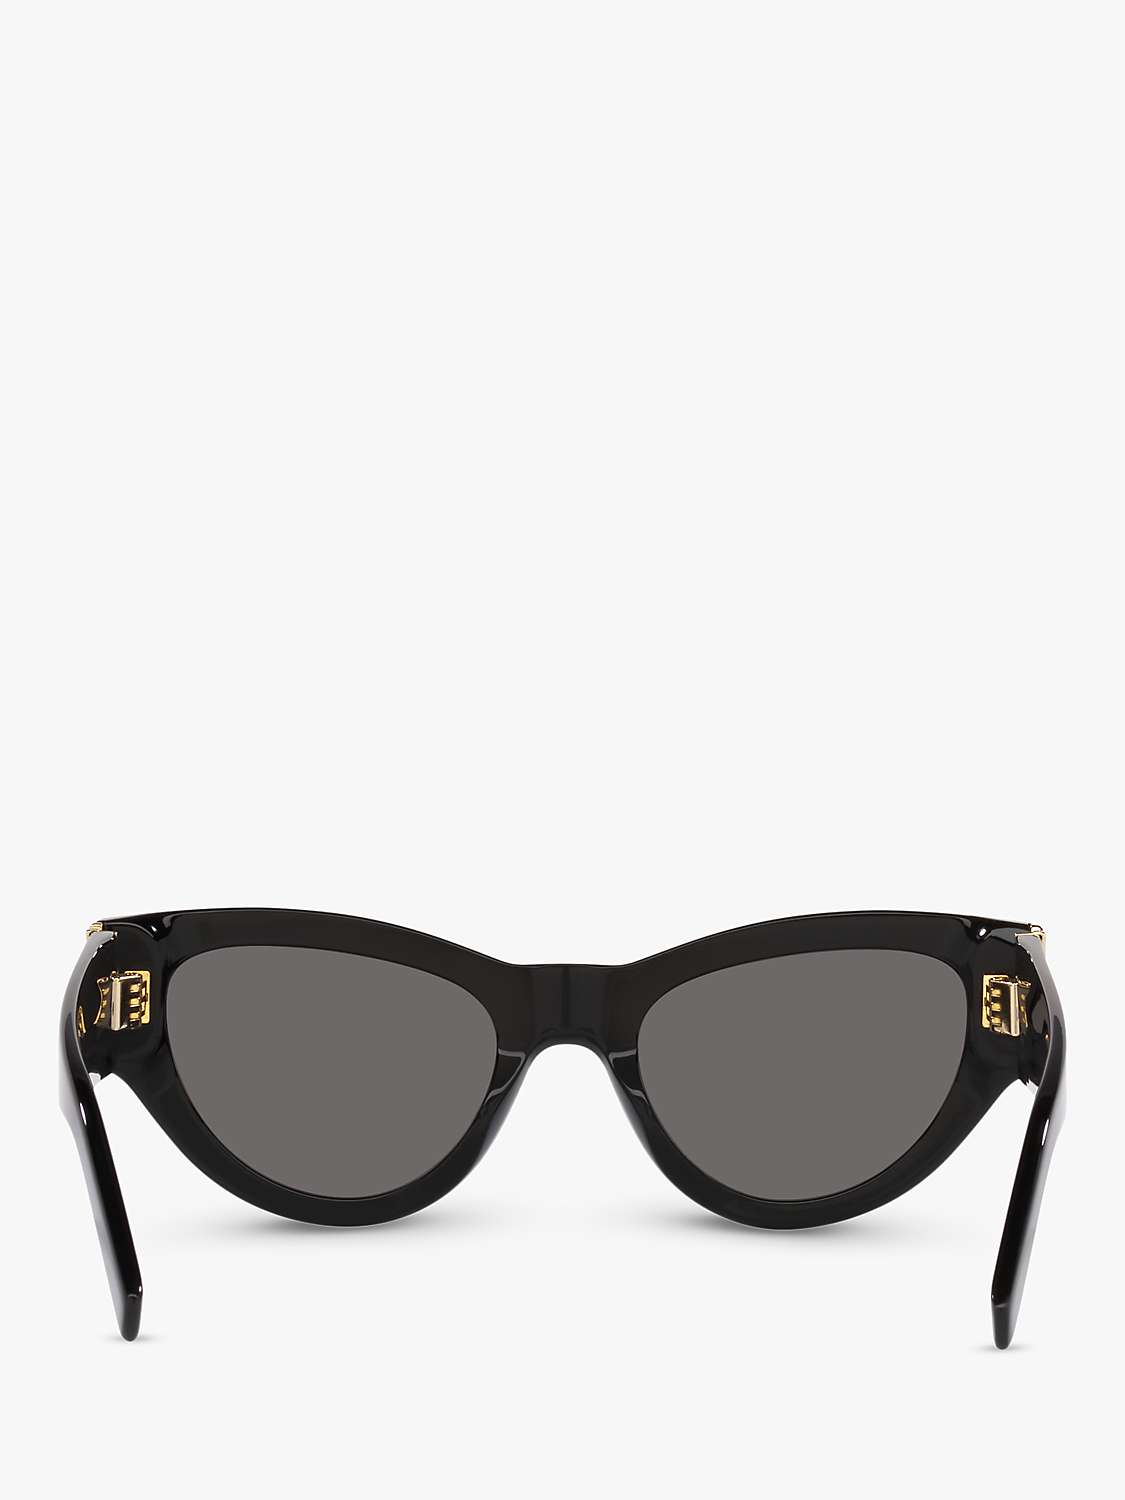 Buy Yves Saint Laurent SL M94 Women's Cat's Eye Sunglasses, Black/Grey Online at johnlewis.com